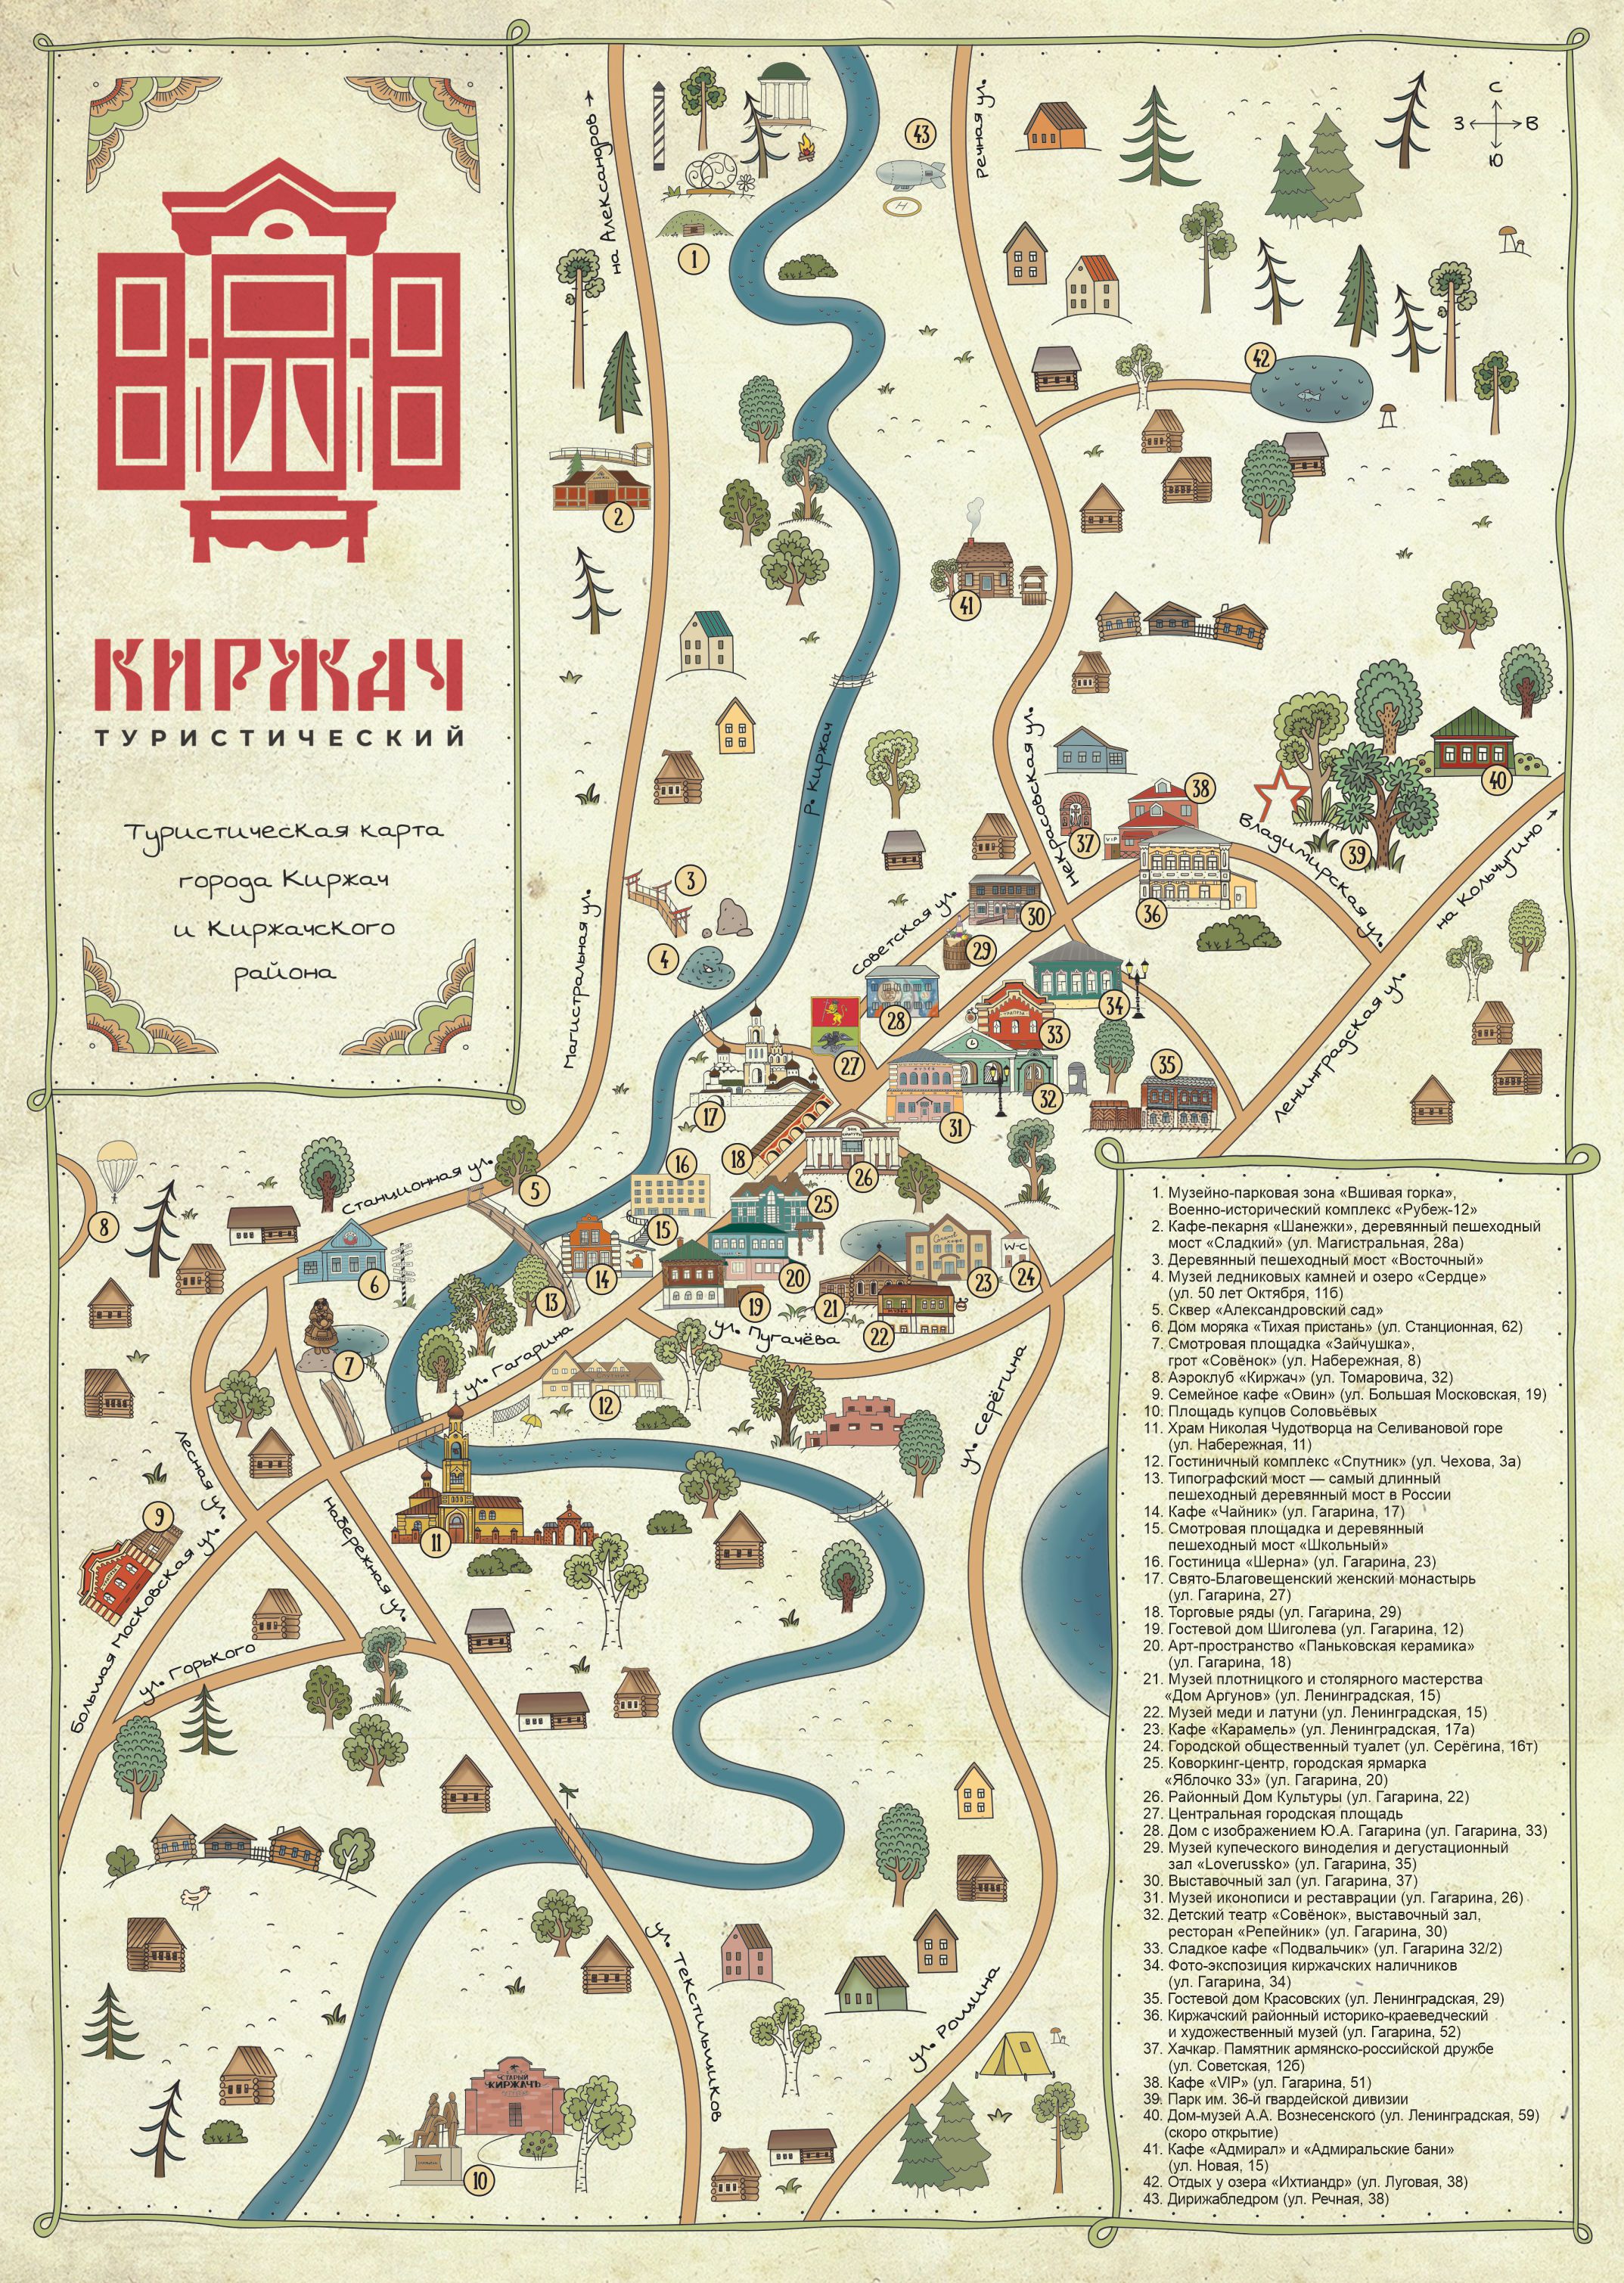 Интерактивная туристическая карта города Киржач. тел.: 8 800 333 7145